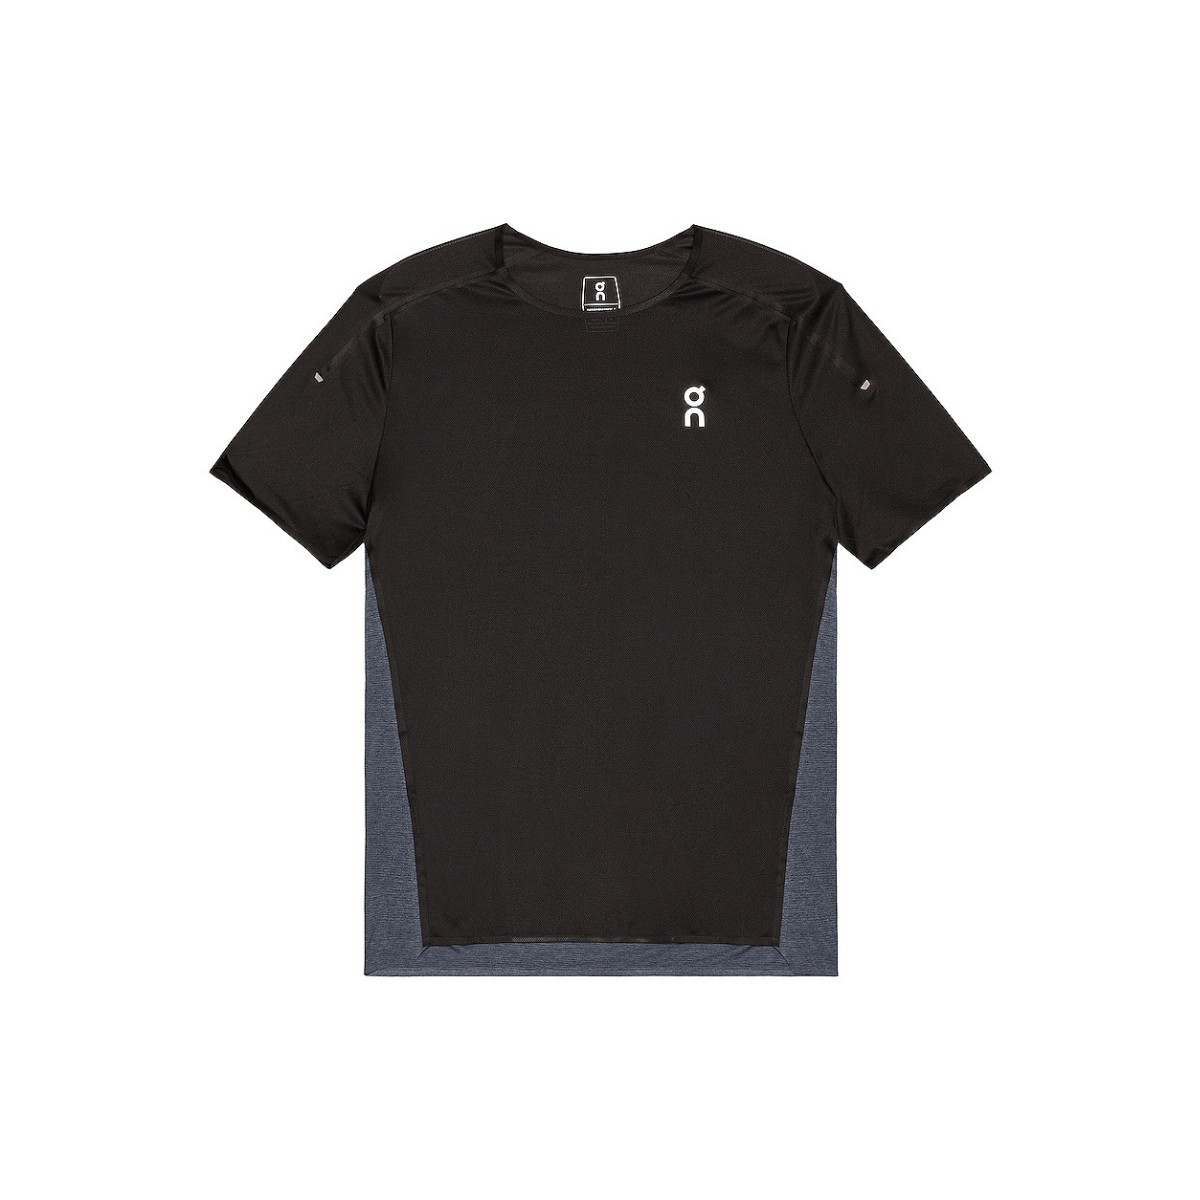 T-Shirt Sur Performance-T Manches Courtes Noir Gris, Taille S